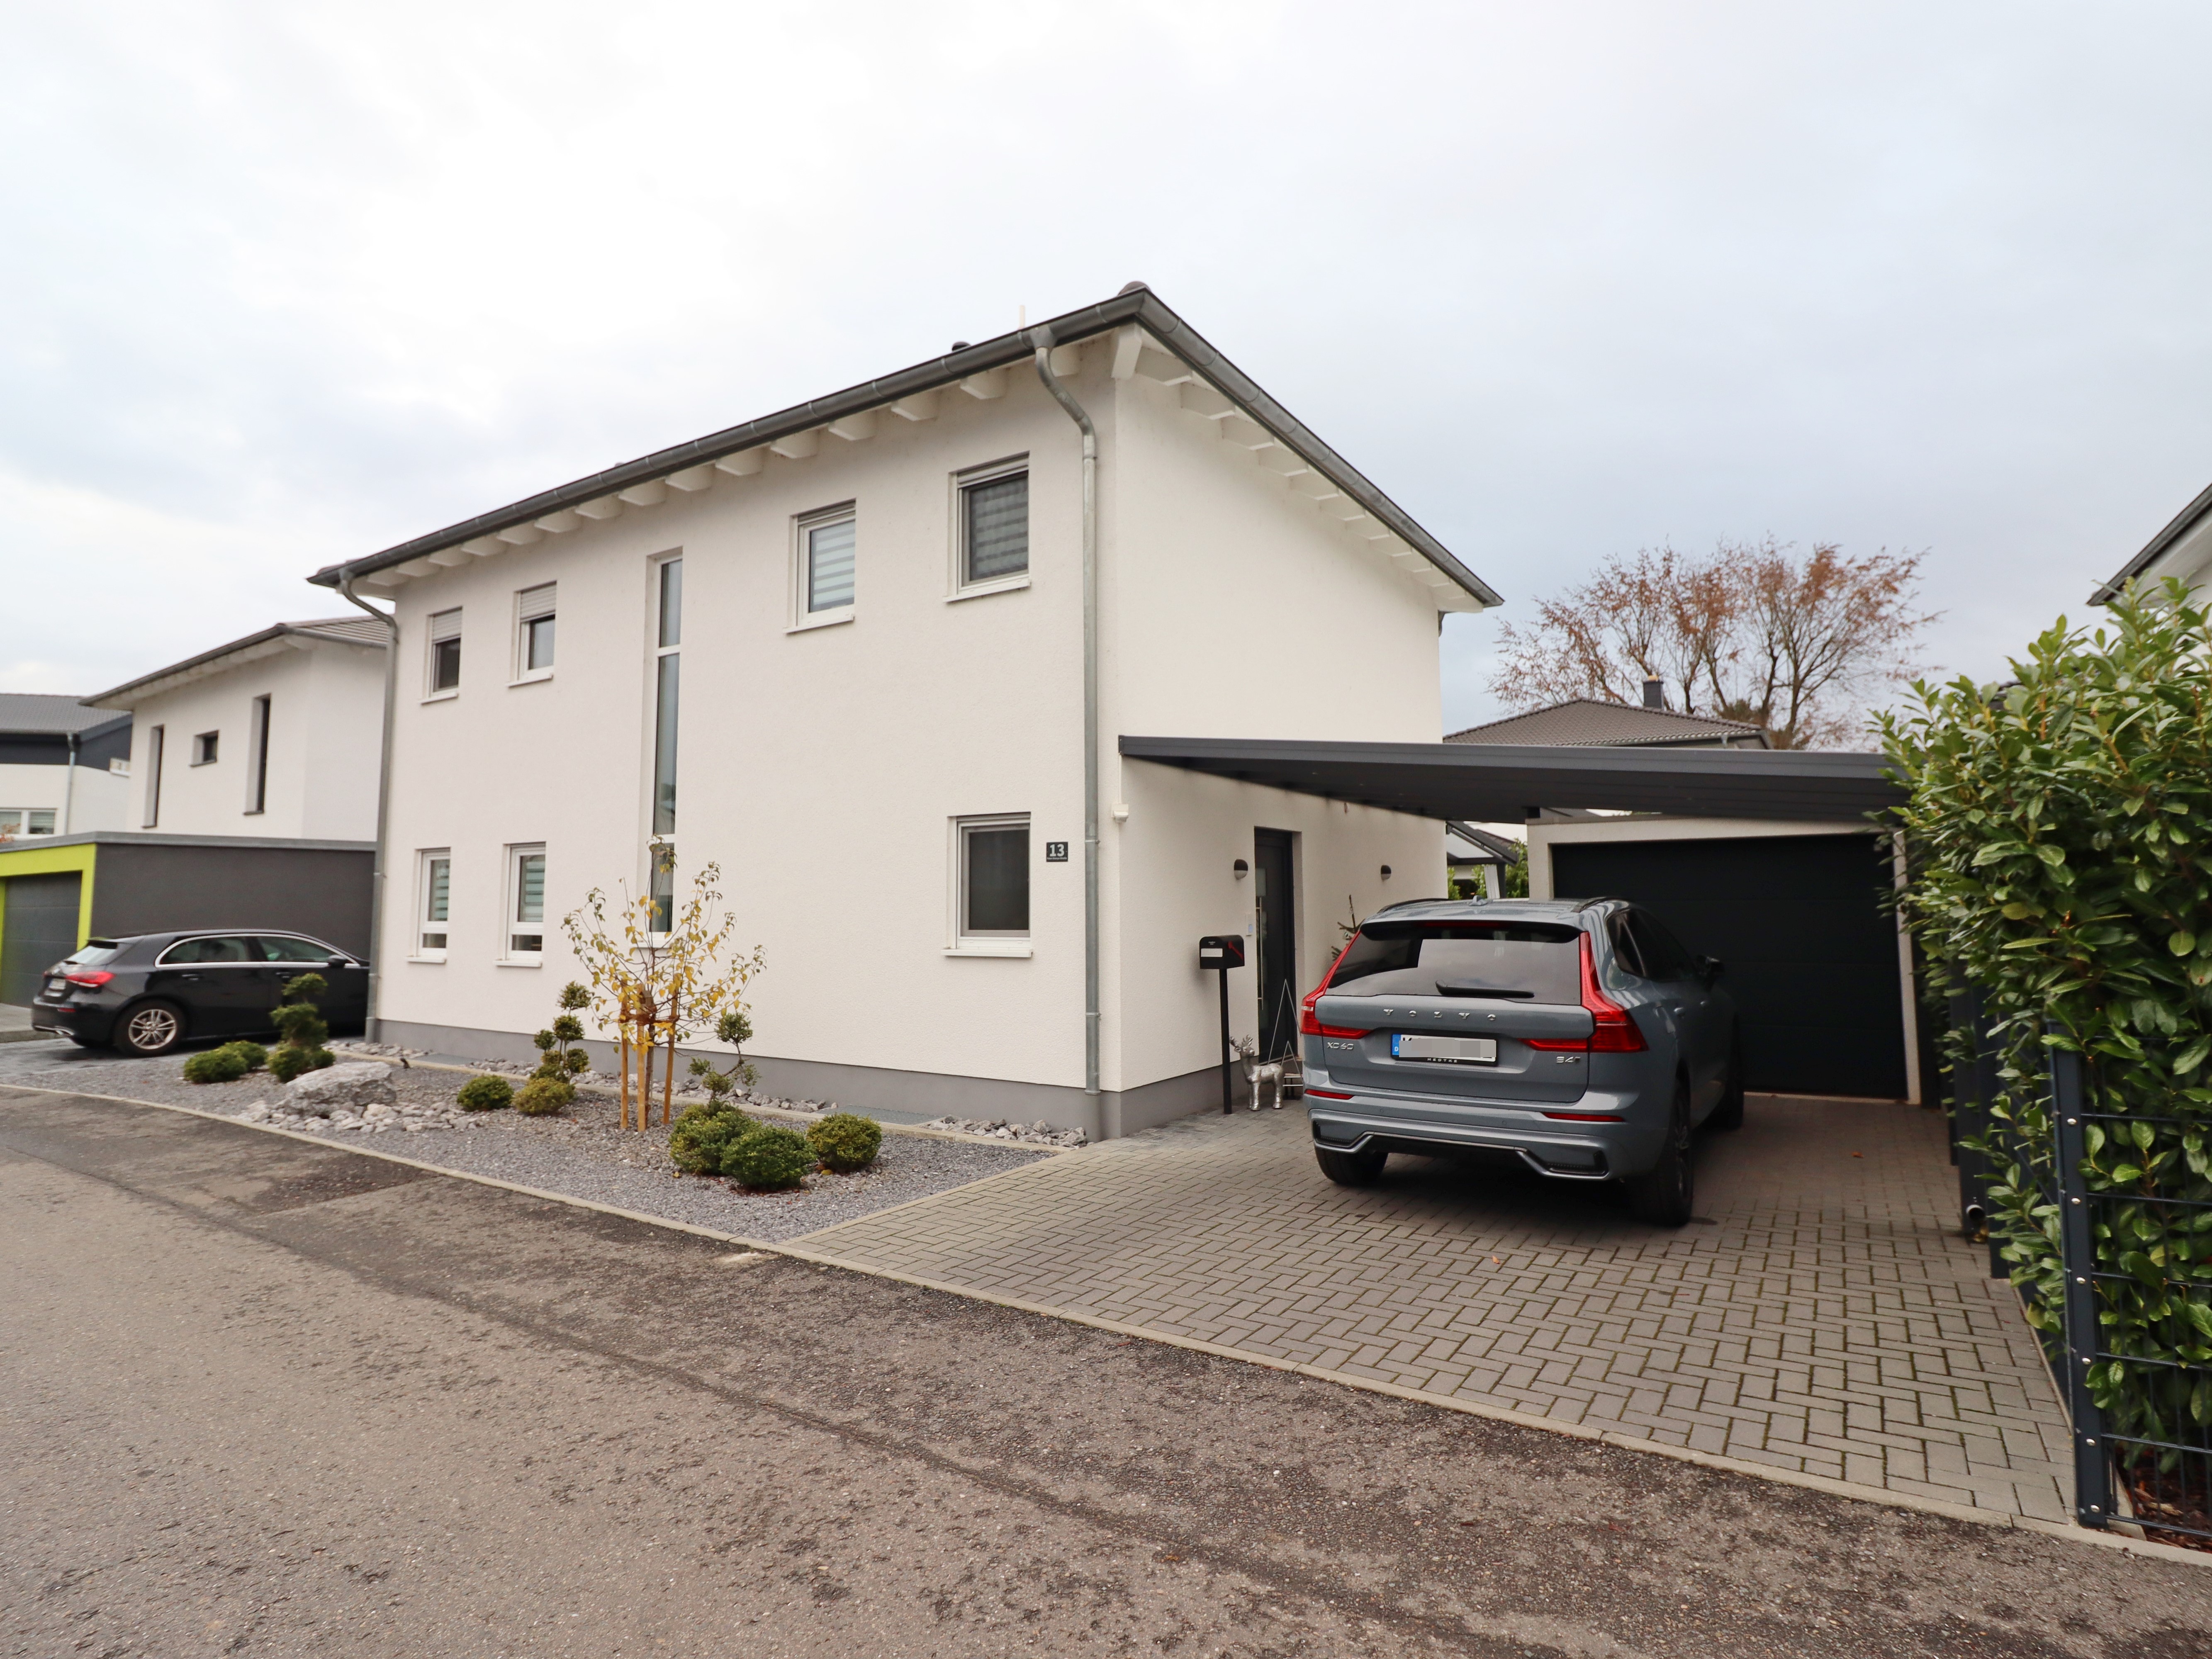 Objekt 1059: Neuwertiges Einfamilienhaus mit Garten im Neubaugebiet von Gernsheim